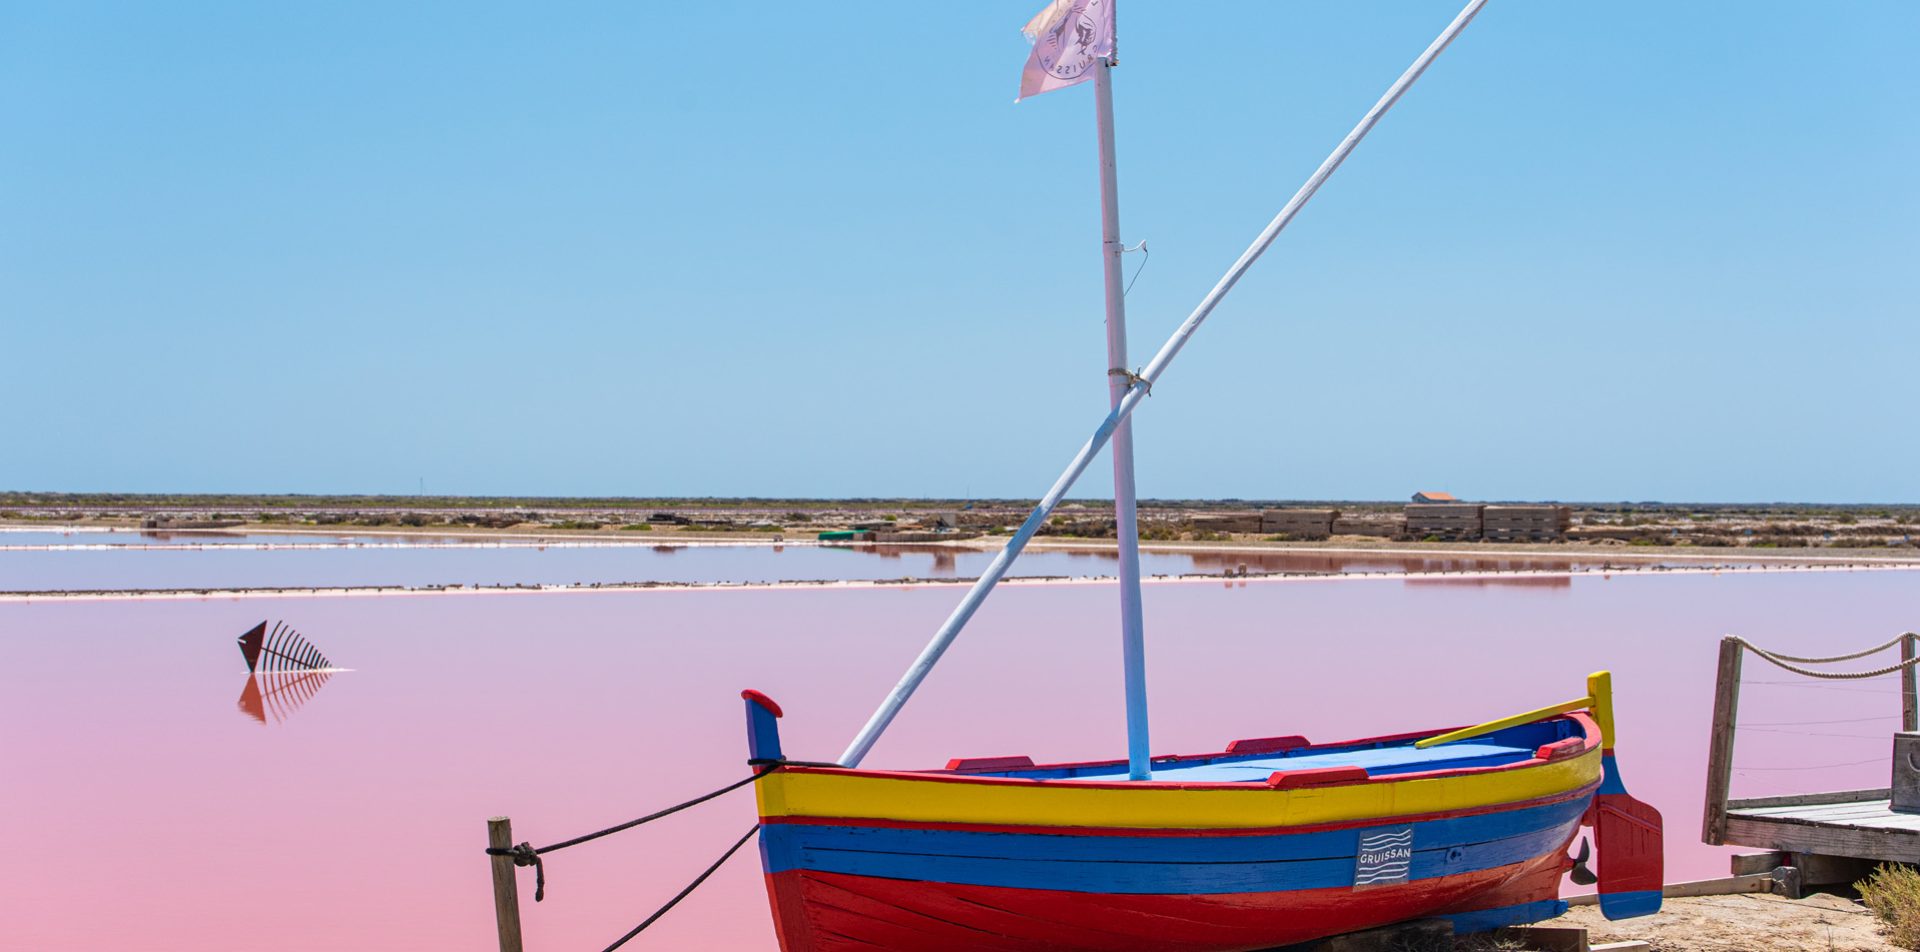 Un bateau de pêche coloré est amarré sur la rive d'un marais salant aux eaux roses sous un ciel bleu.